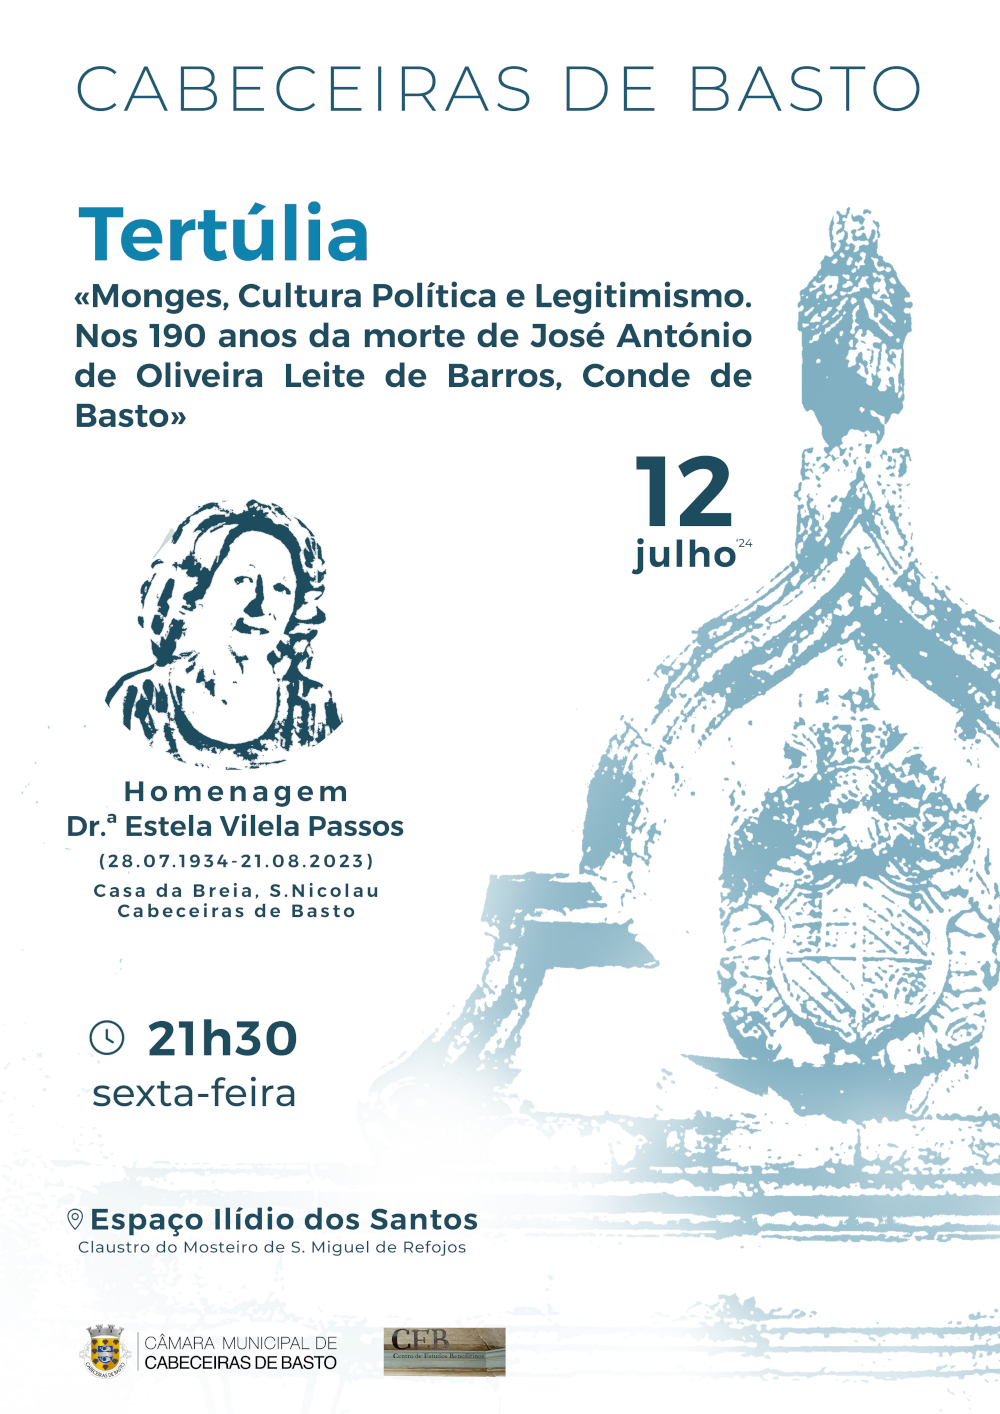 Leia mais sobre Tertúlia «Monges, Cultura Política e Legitimismo» com homenagem a Estela Vilela Passos